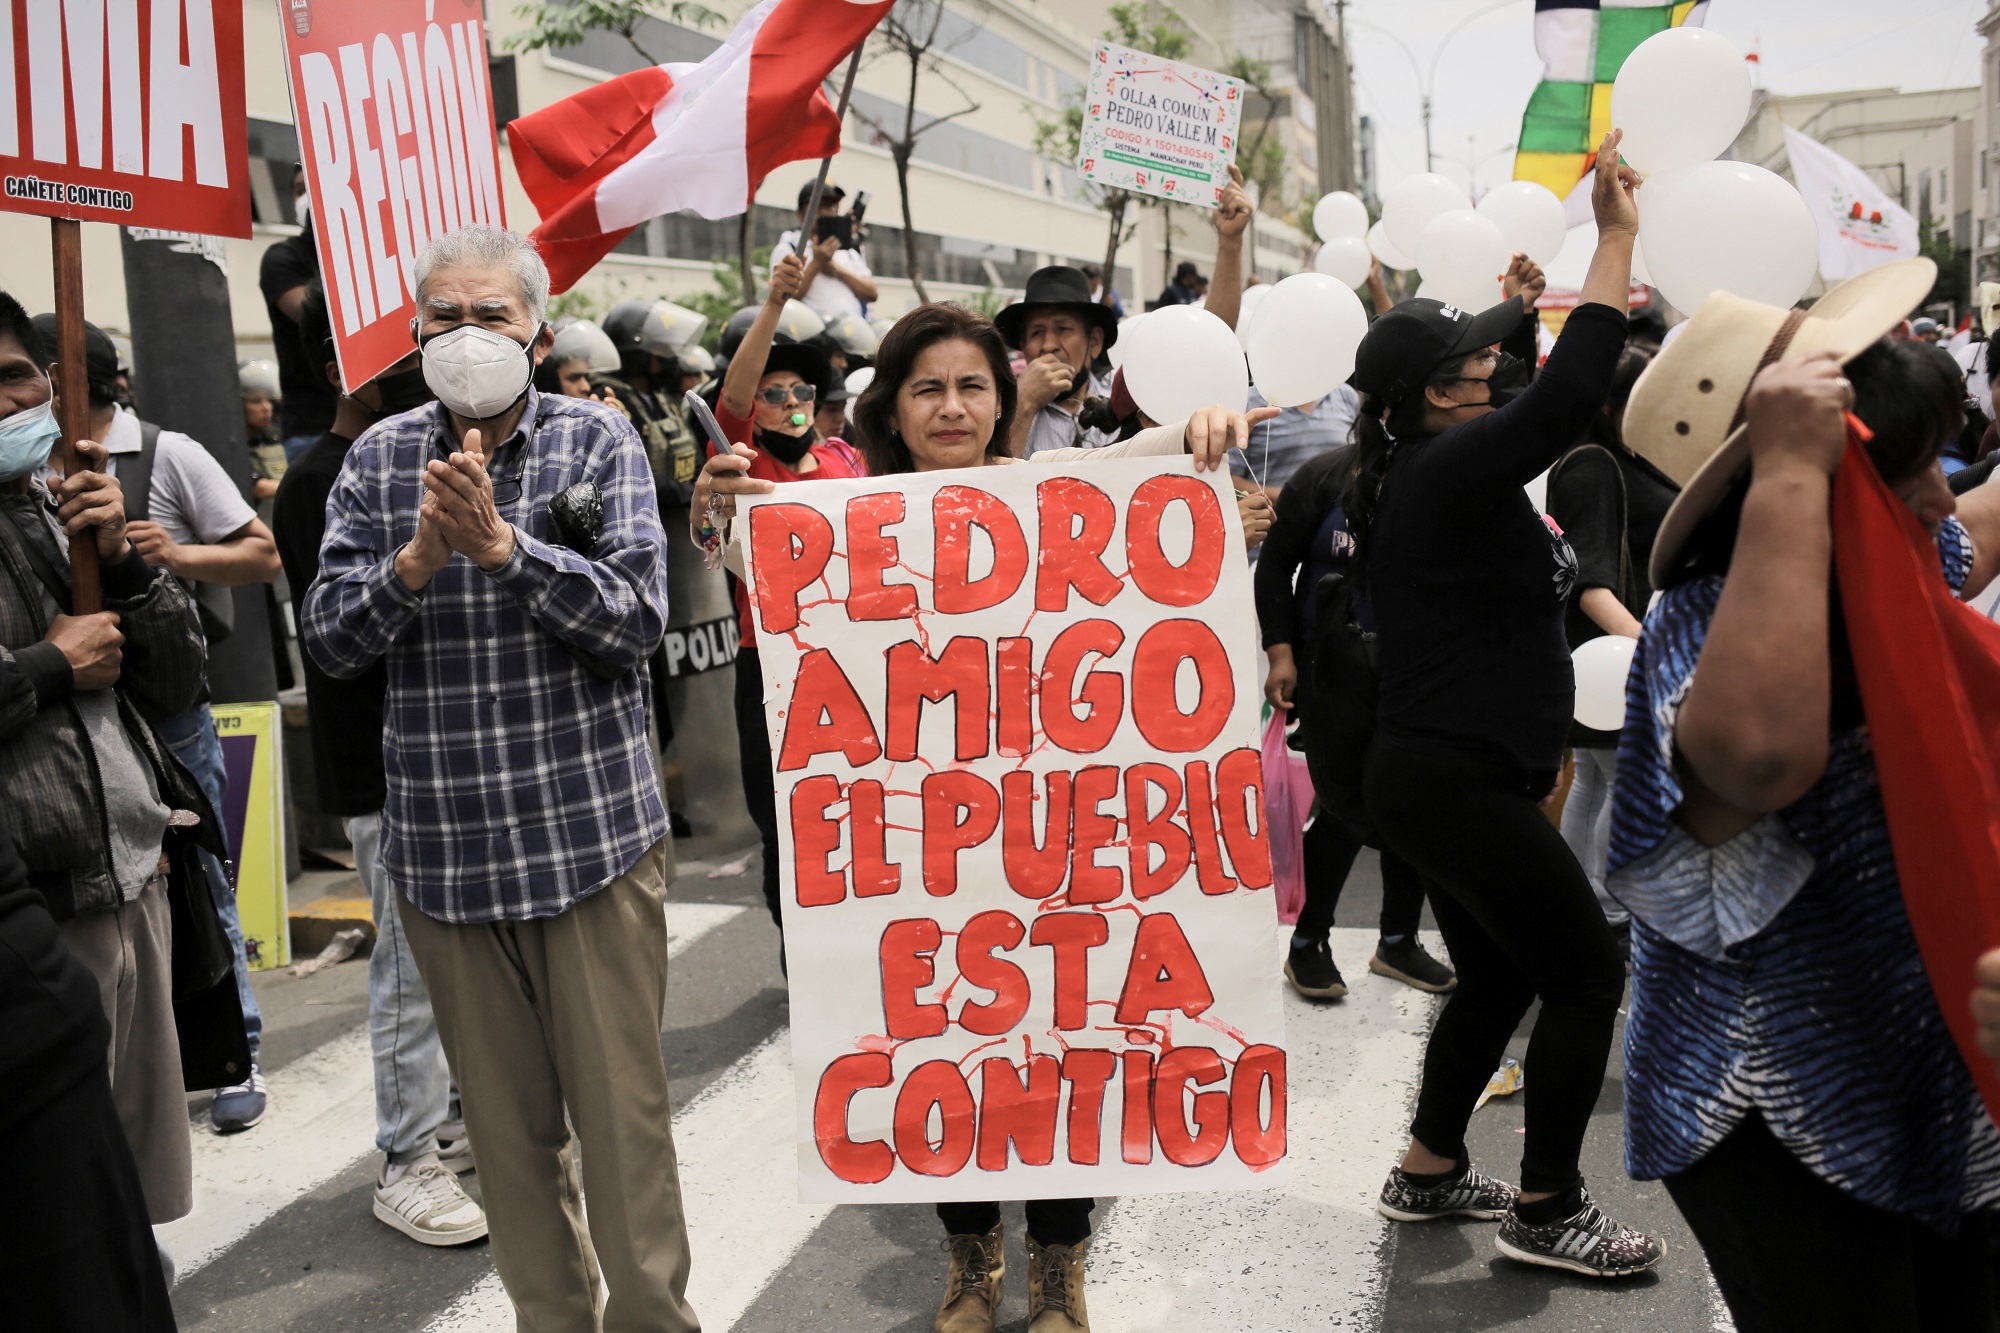 Una persona sostiene una pancarta que reza "Pedro, amigo, el pueblo está contigo" durante una protesta después de que el Congreso votara para derrocar al presidente de Perú, Pedro Castillo. -REUTERS/Gerardo Marin